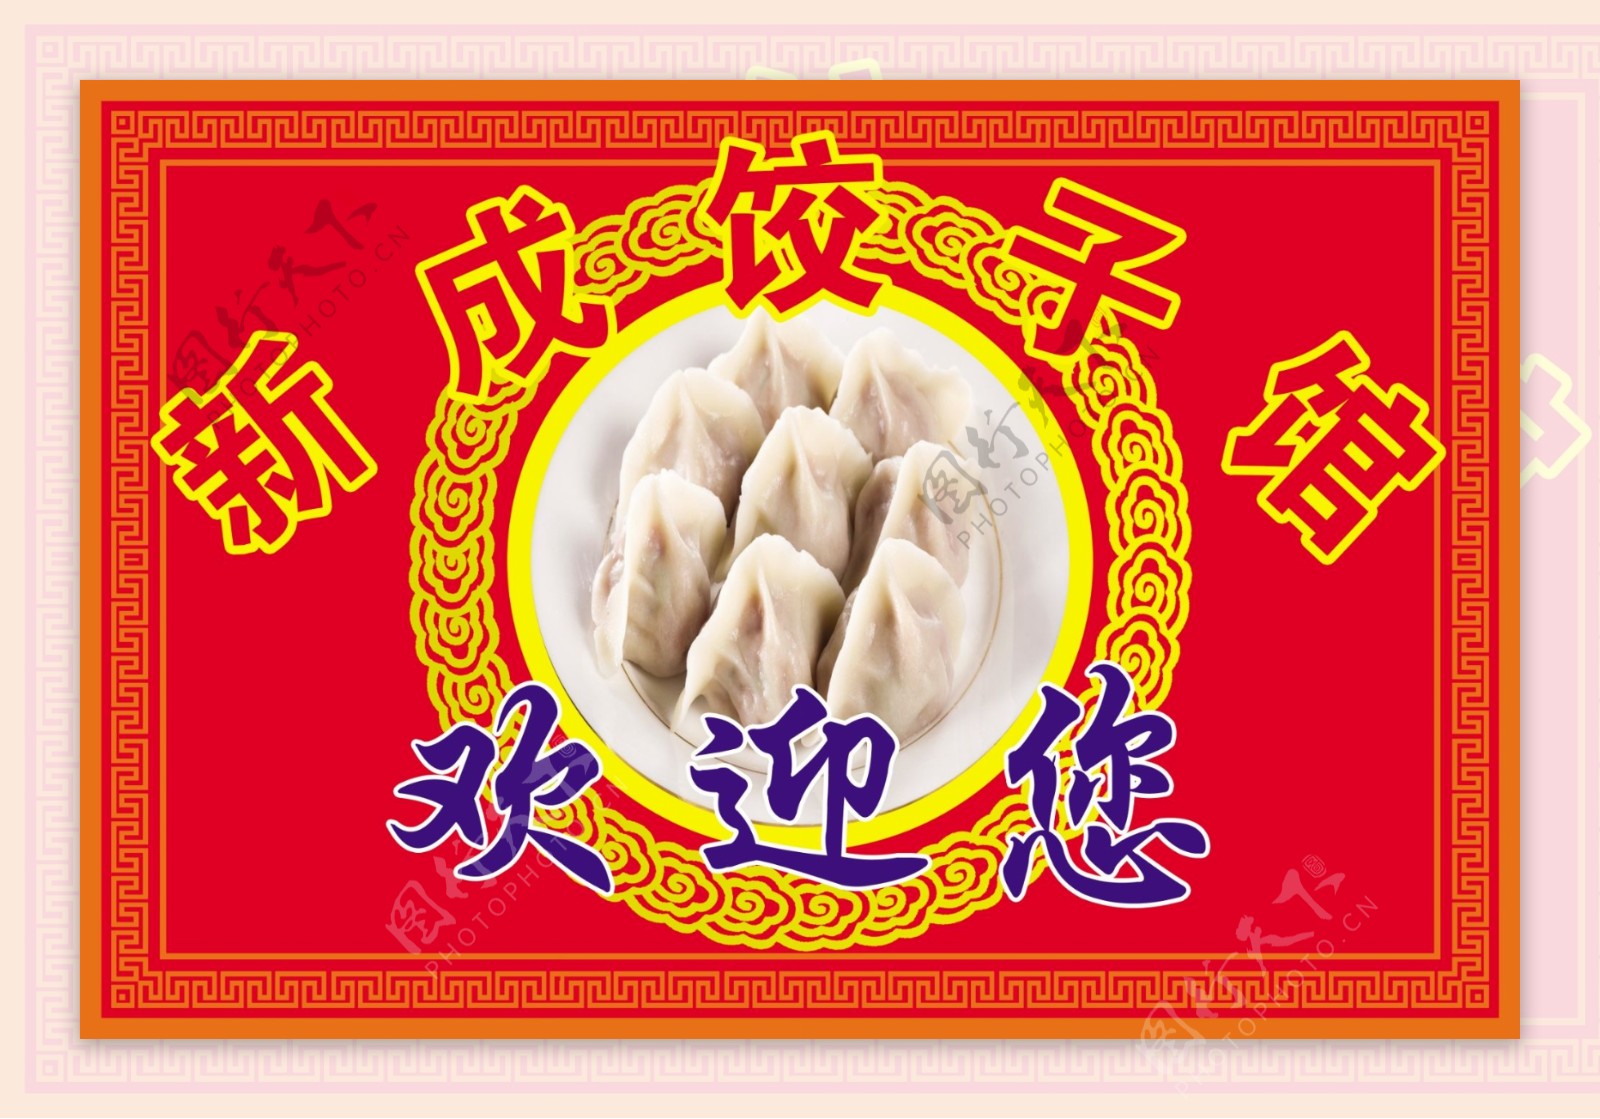 饺子馆文化墙图片